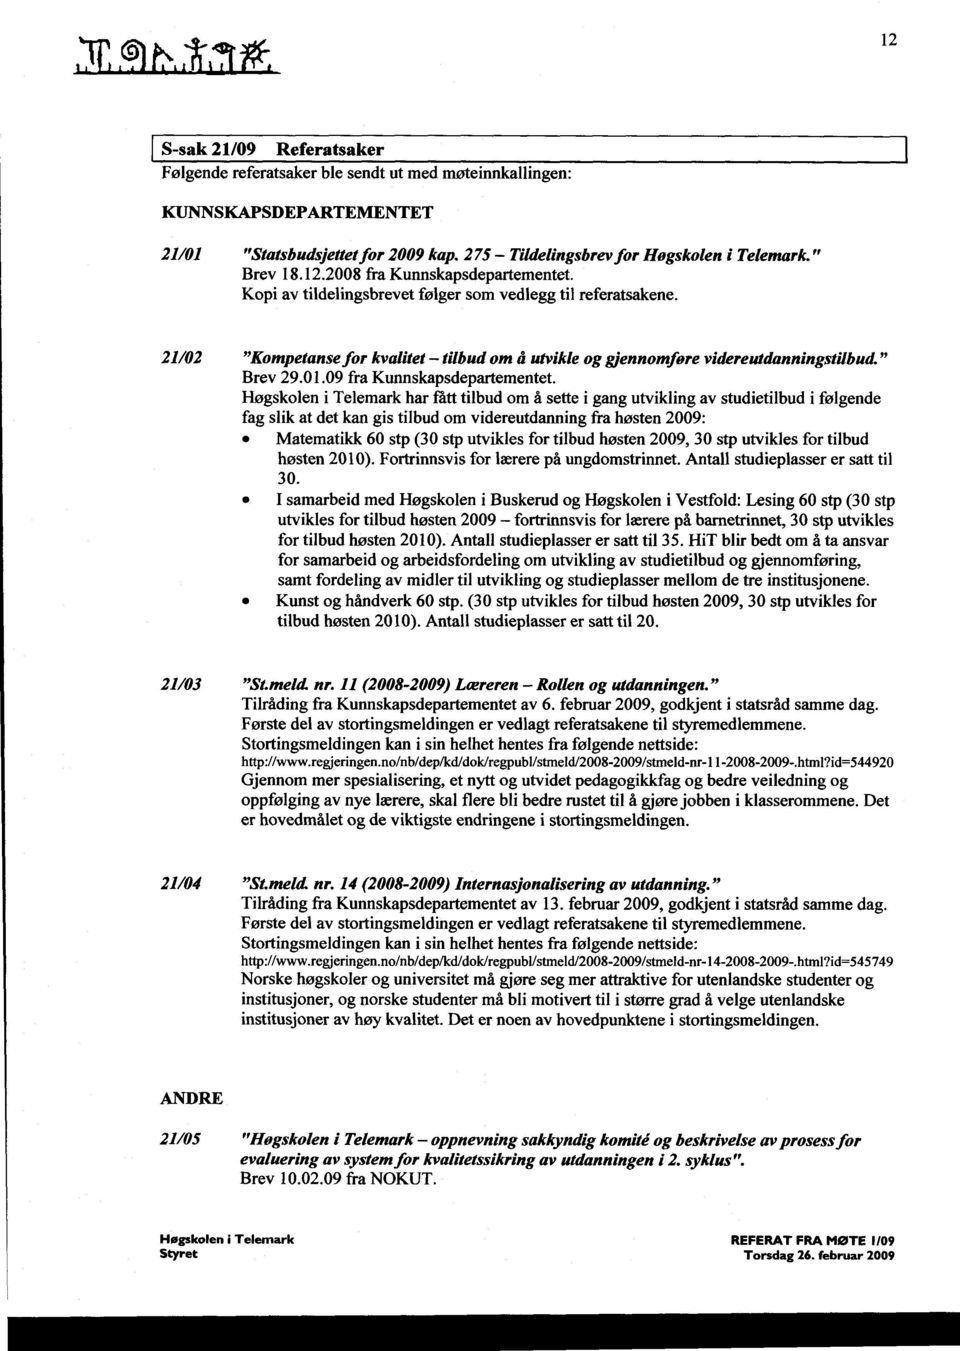 21/02 "Kompetansefor kvalitet - tilbud om å utvikle og gjennomføre videreutdanningstilbud " Brev 29.01.09 fra Kunnskapsdepartementet.